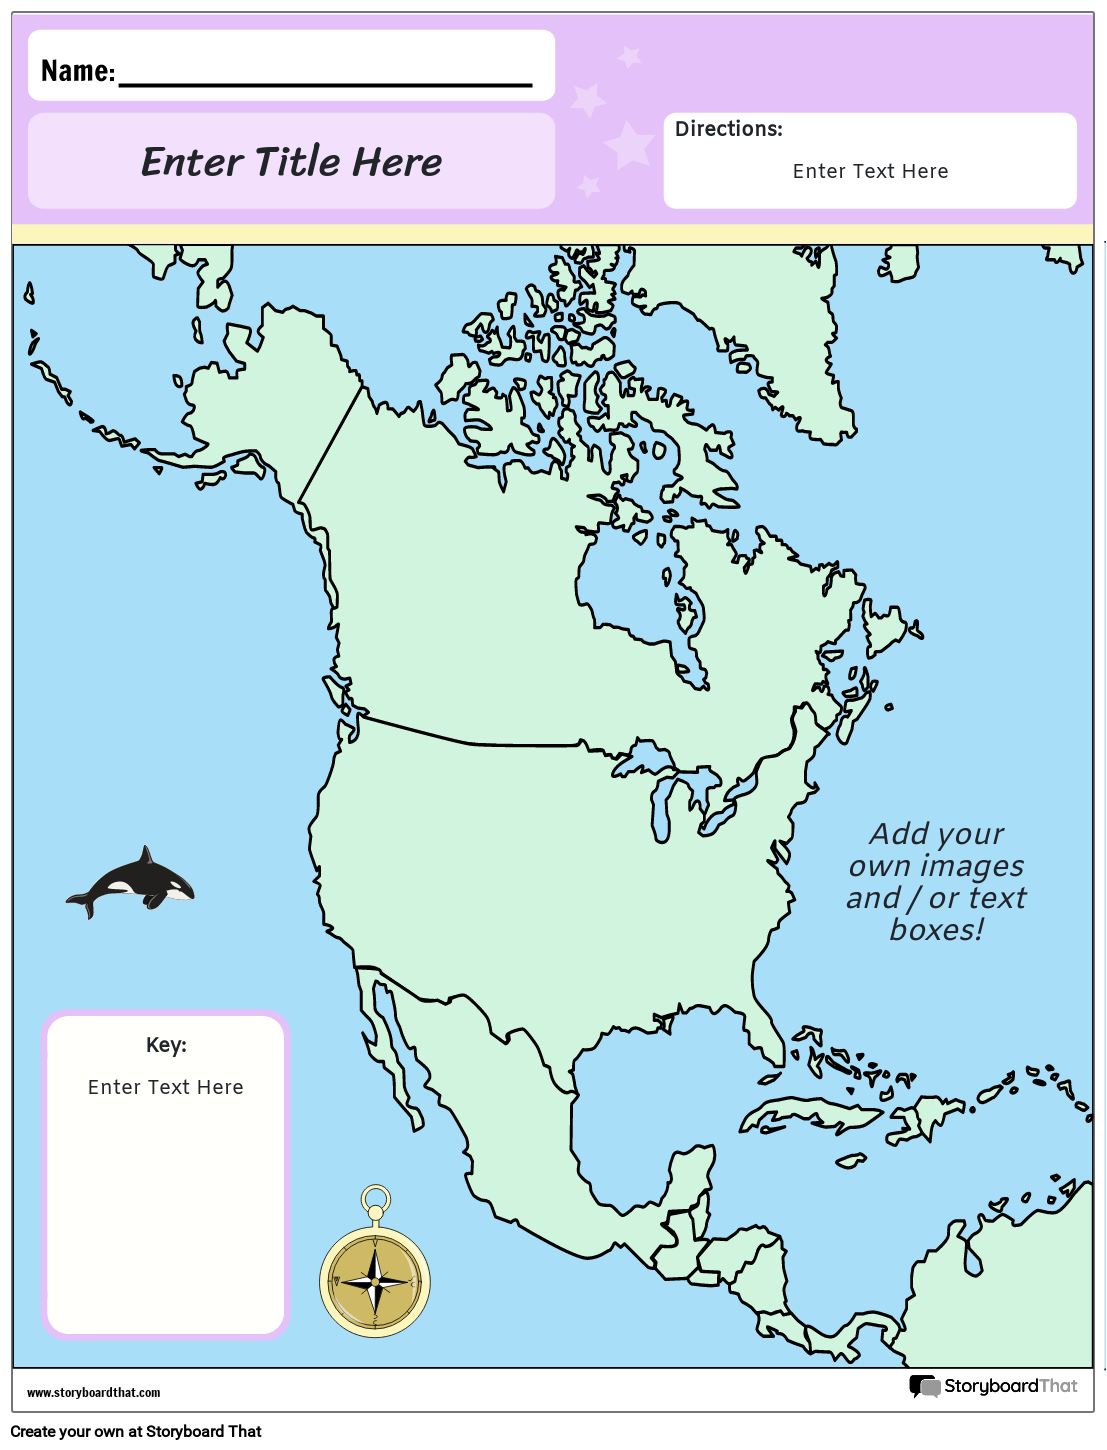 उत्तरी अमेरिका का नक्शा